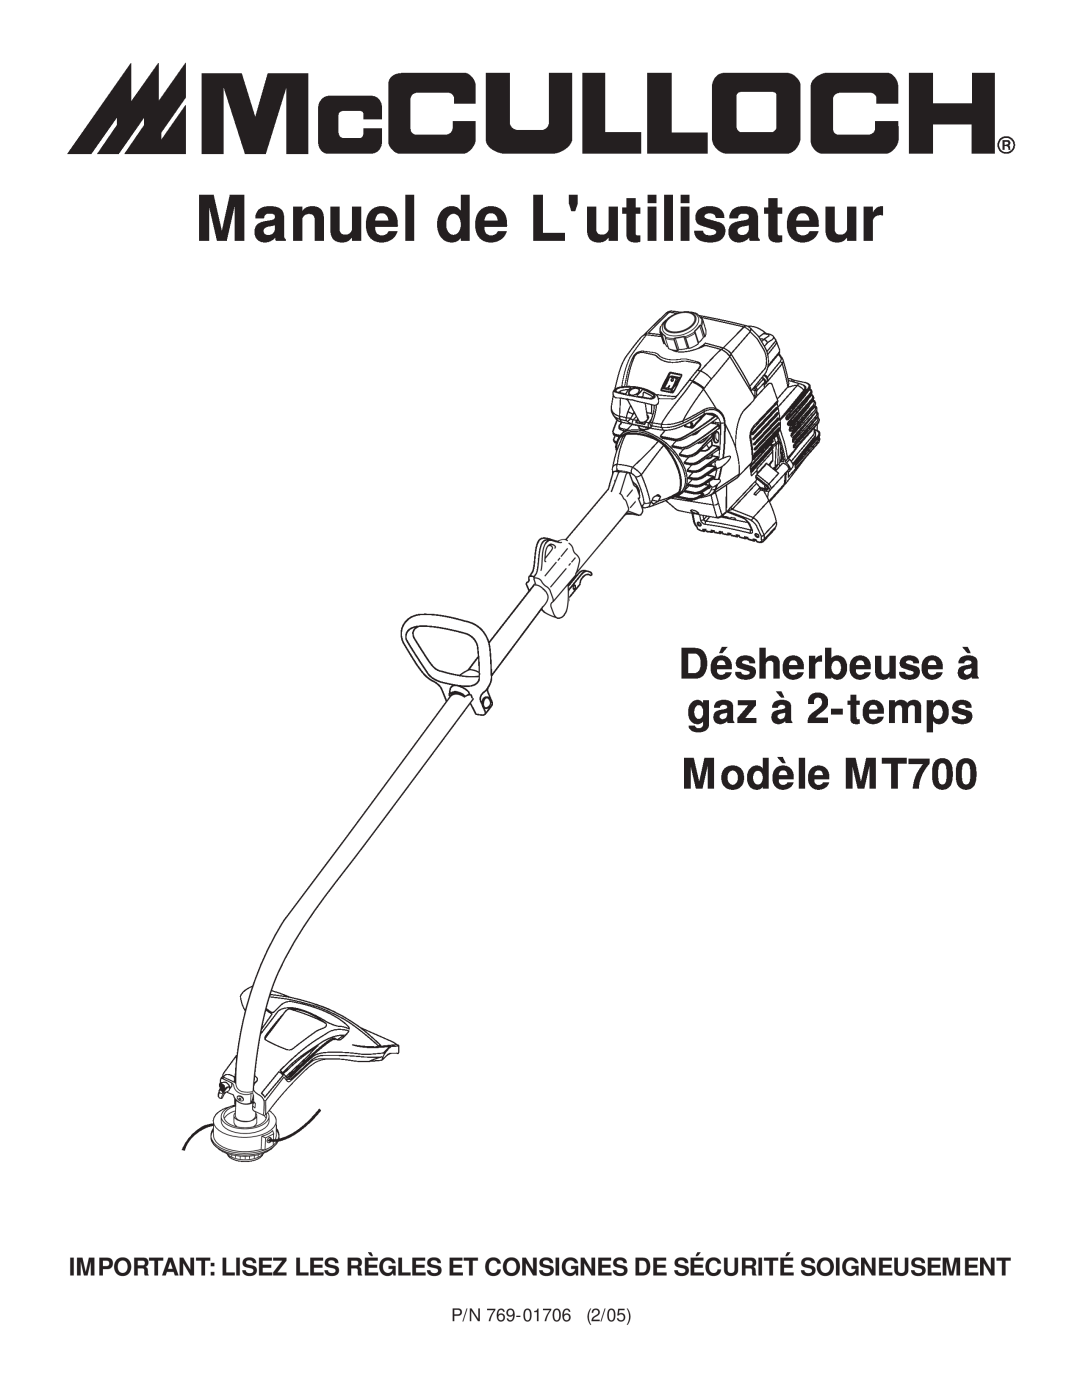 MTD manual Manuel de Lutilisateur, Désherbeuse à gaz à 2-temps Modèle MT700 